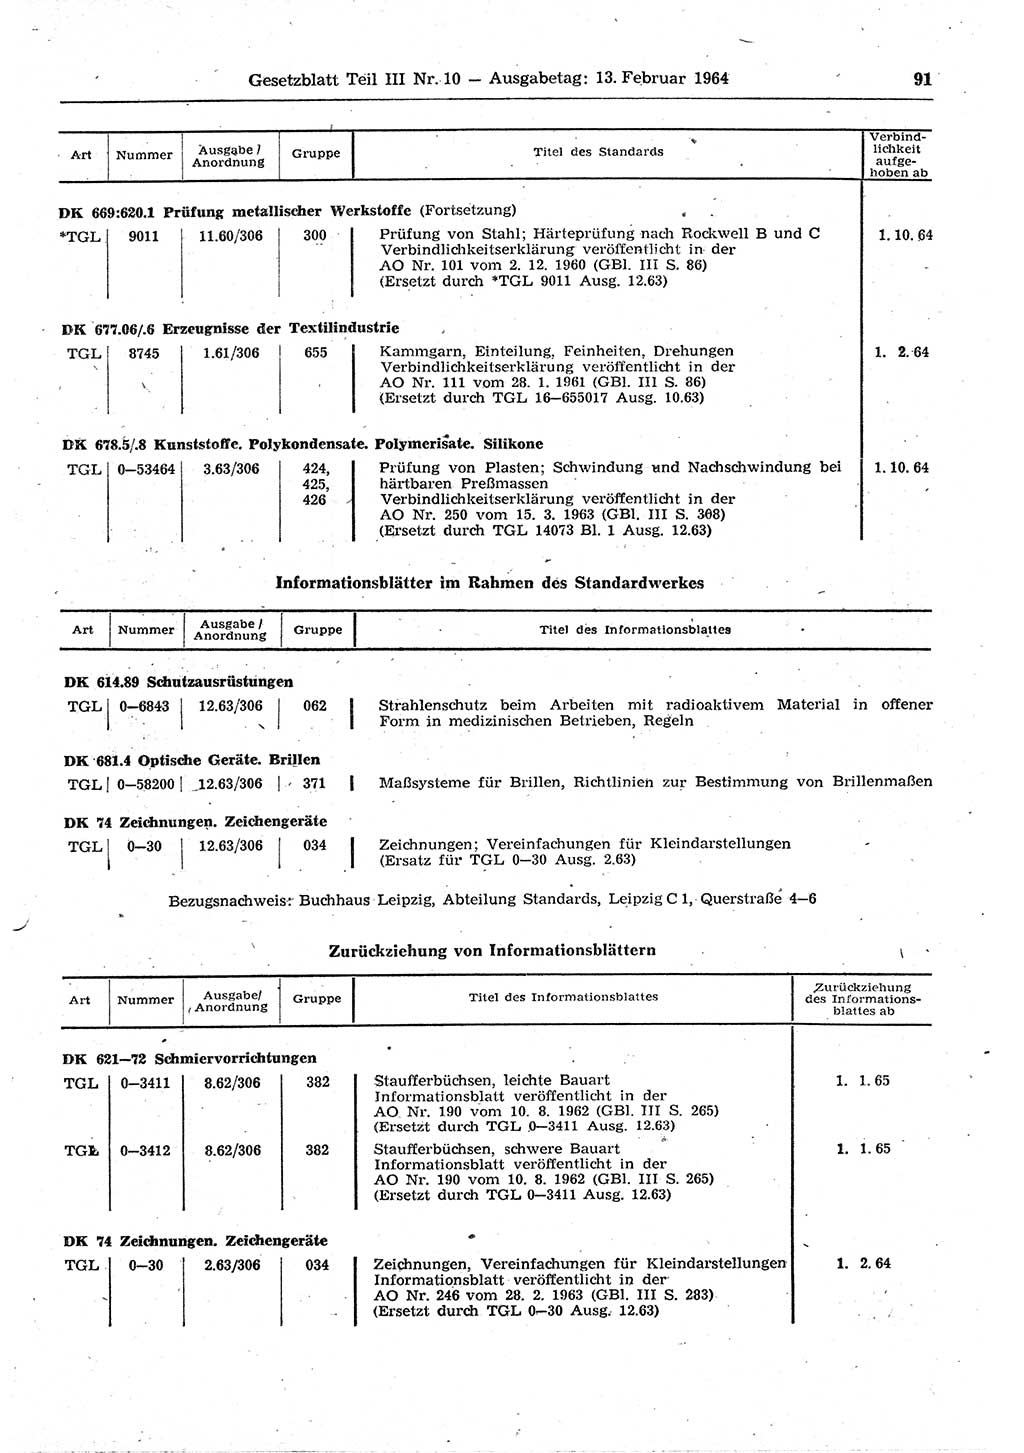 Gesetzblatt (GBl.) der Deutschen Demokratischen Republik (DDR) Teil ⅠⅠⅠ 1964, Seite 91 (GBl. DDR ⅠⅠⅠ 1964, S. 91)